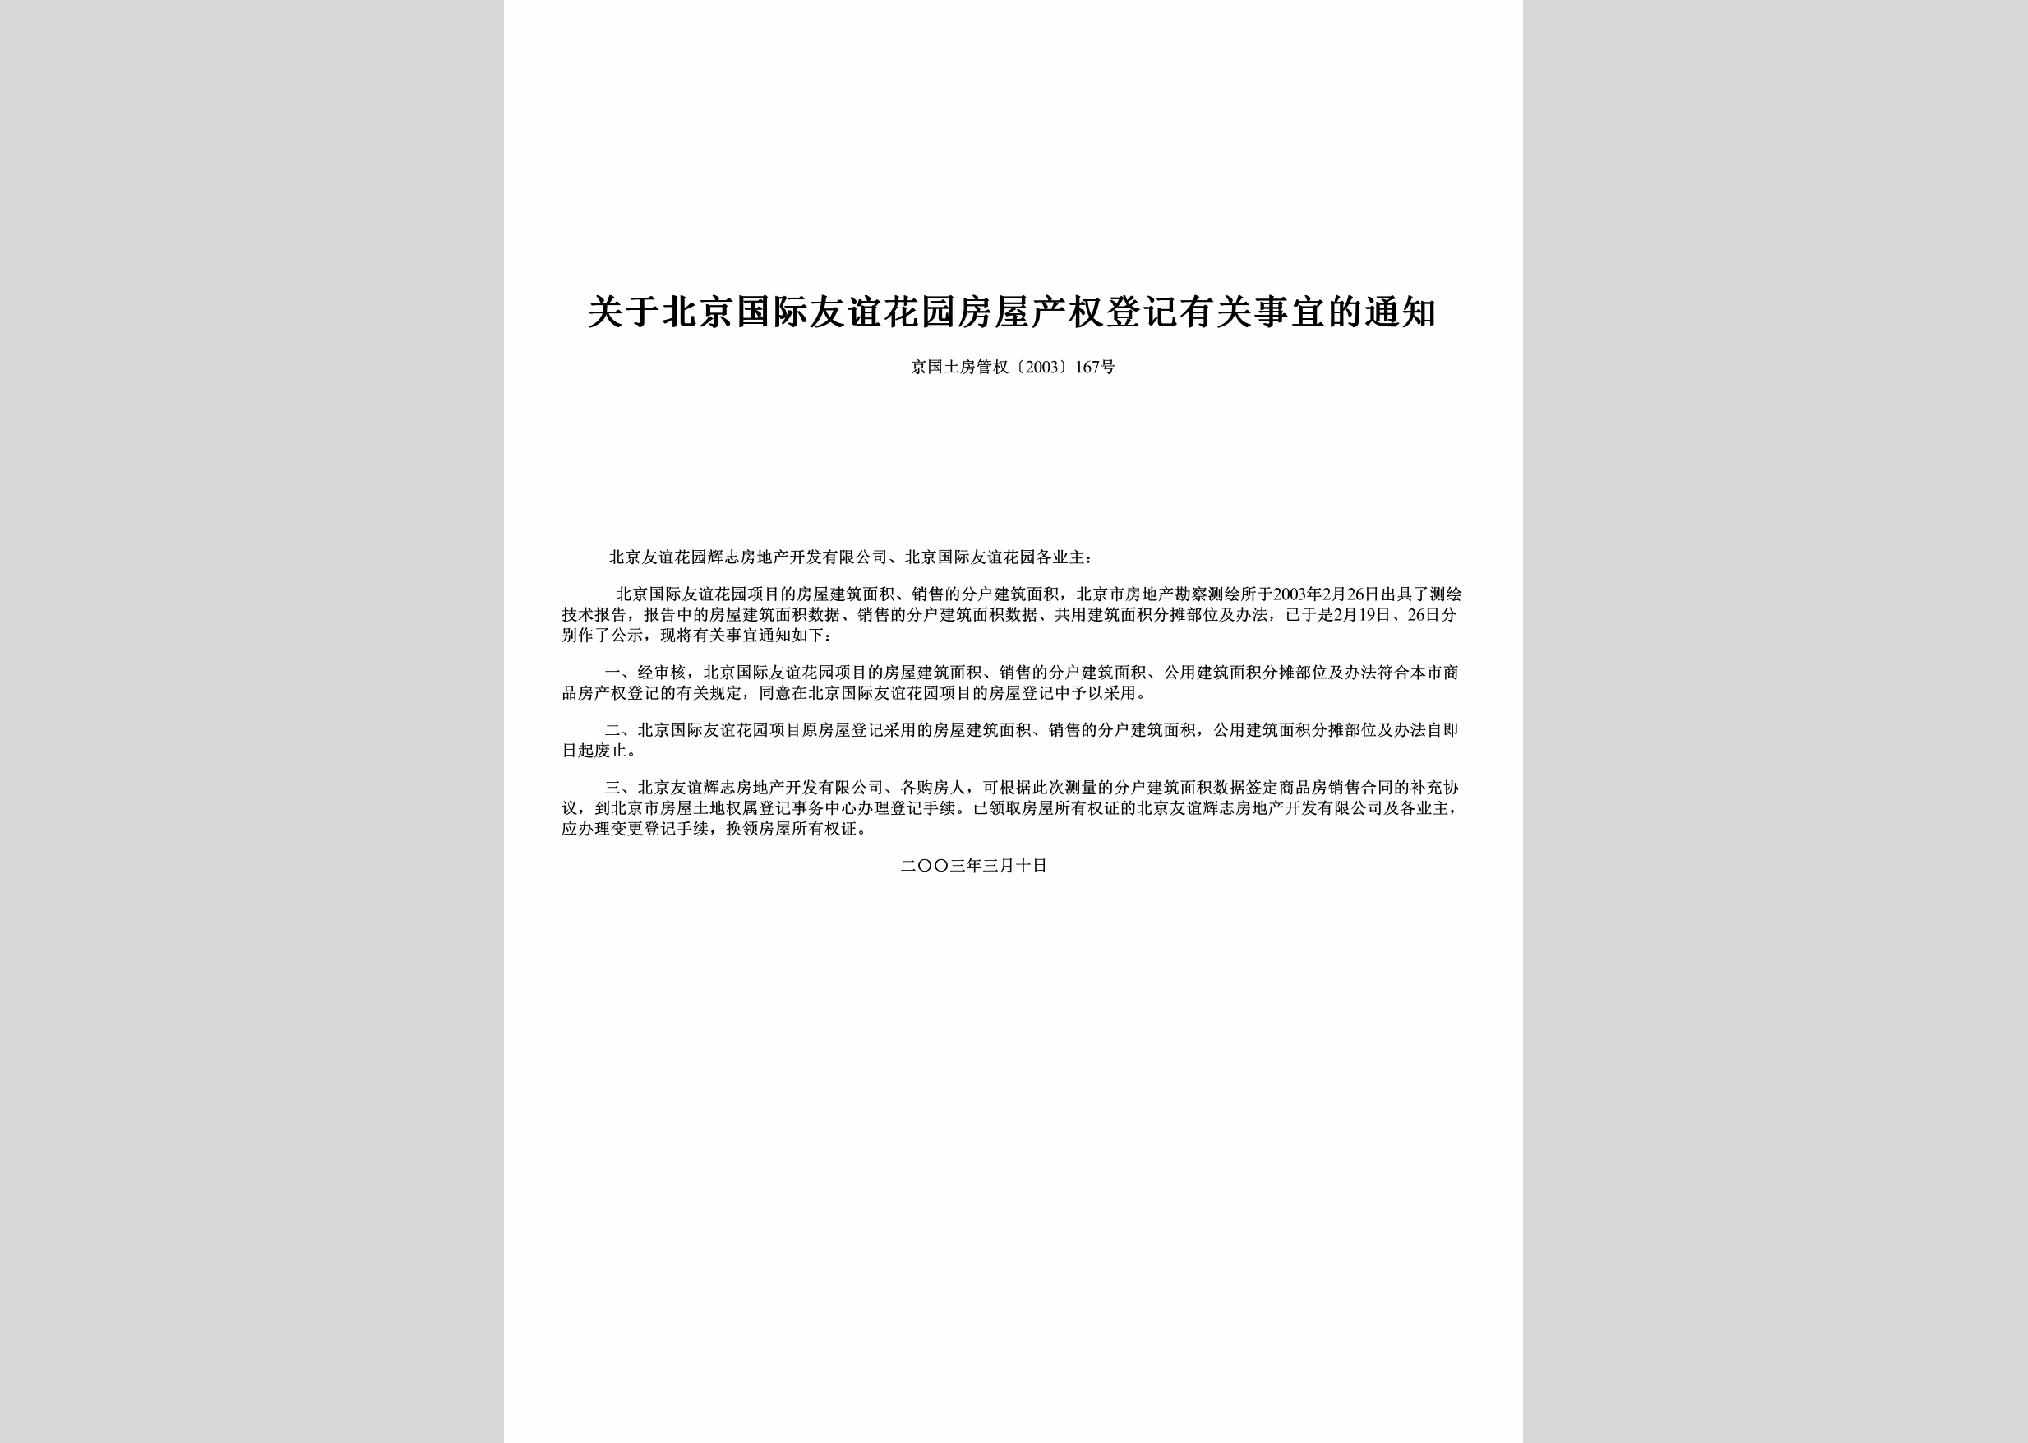 京国土房管权[2003]167号：关于北京国际友谊花园房屋产权登记有关事宜的通知